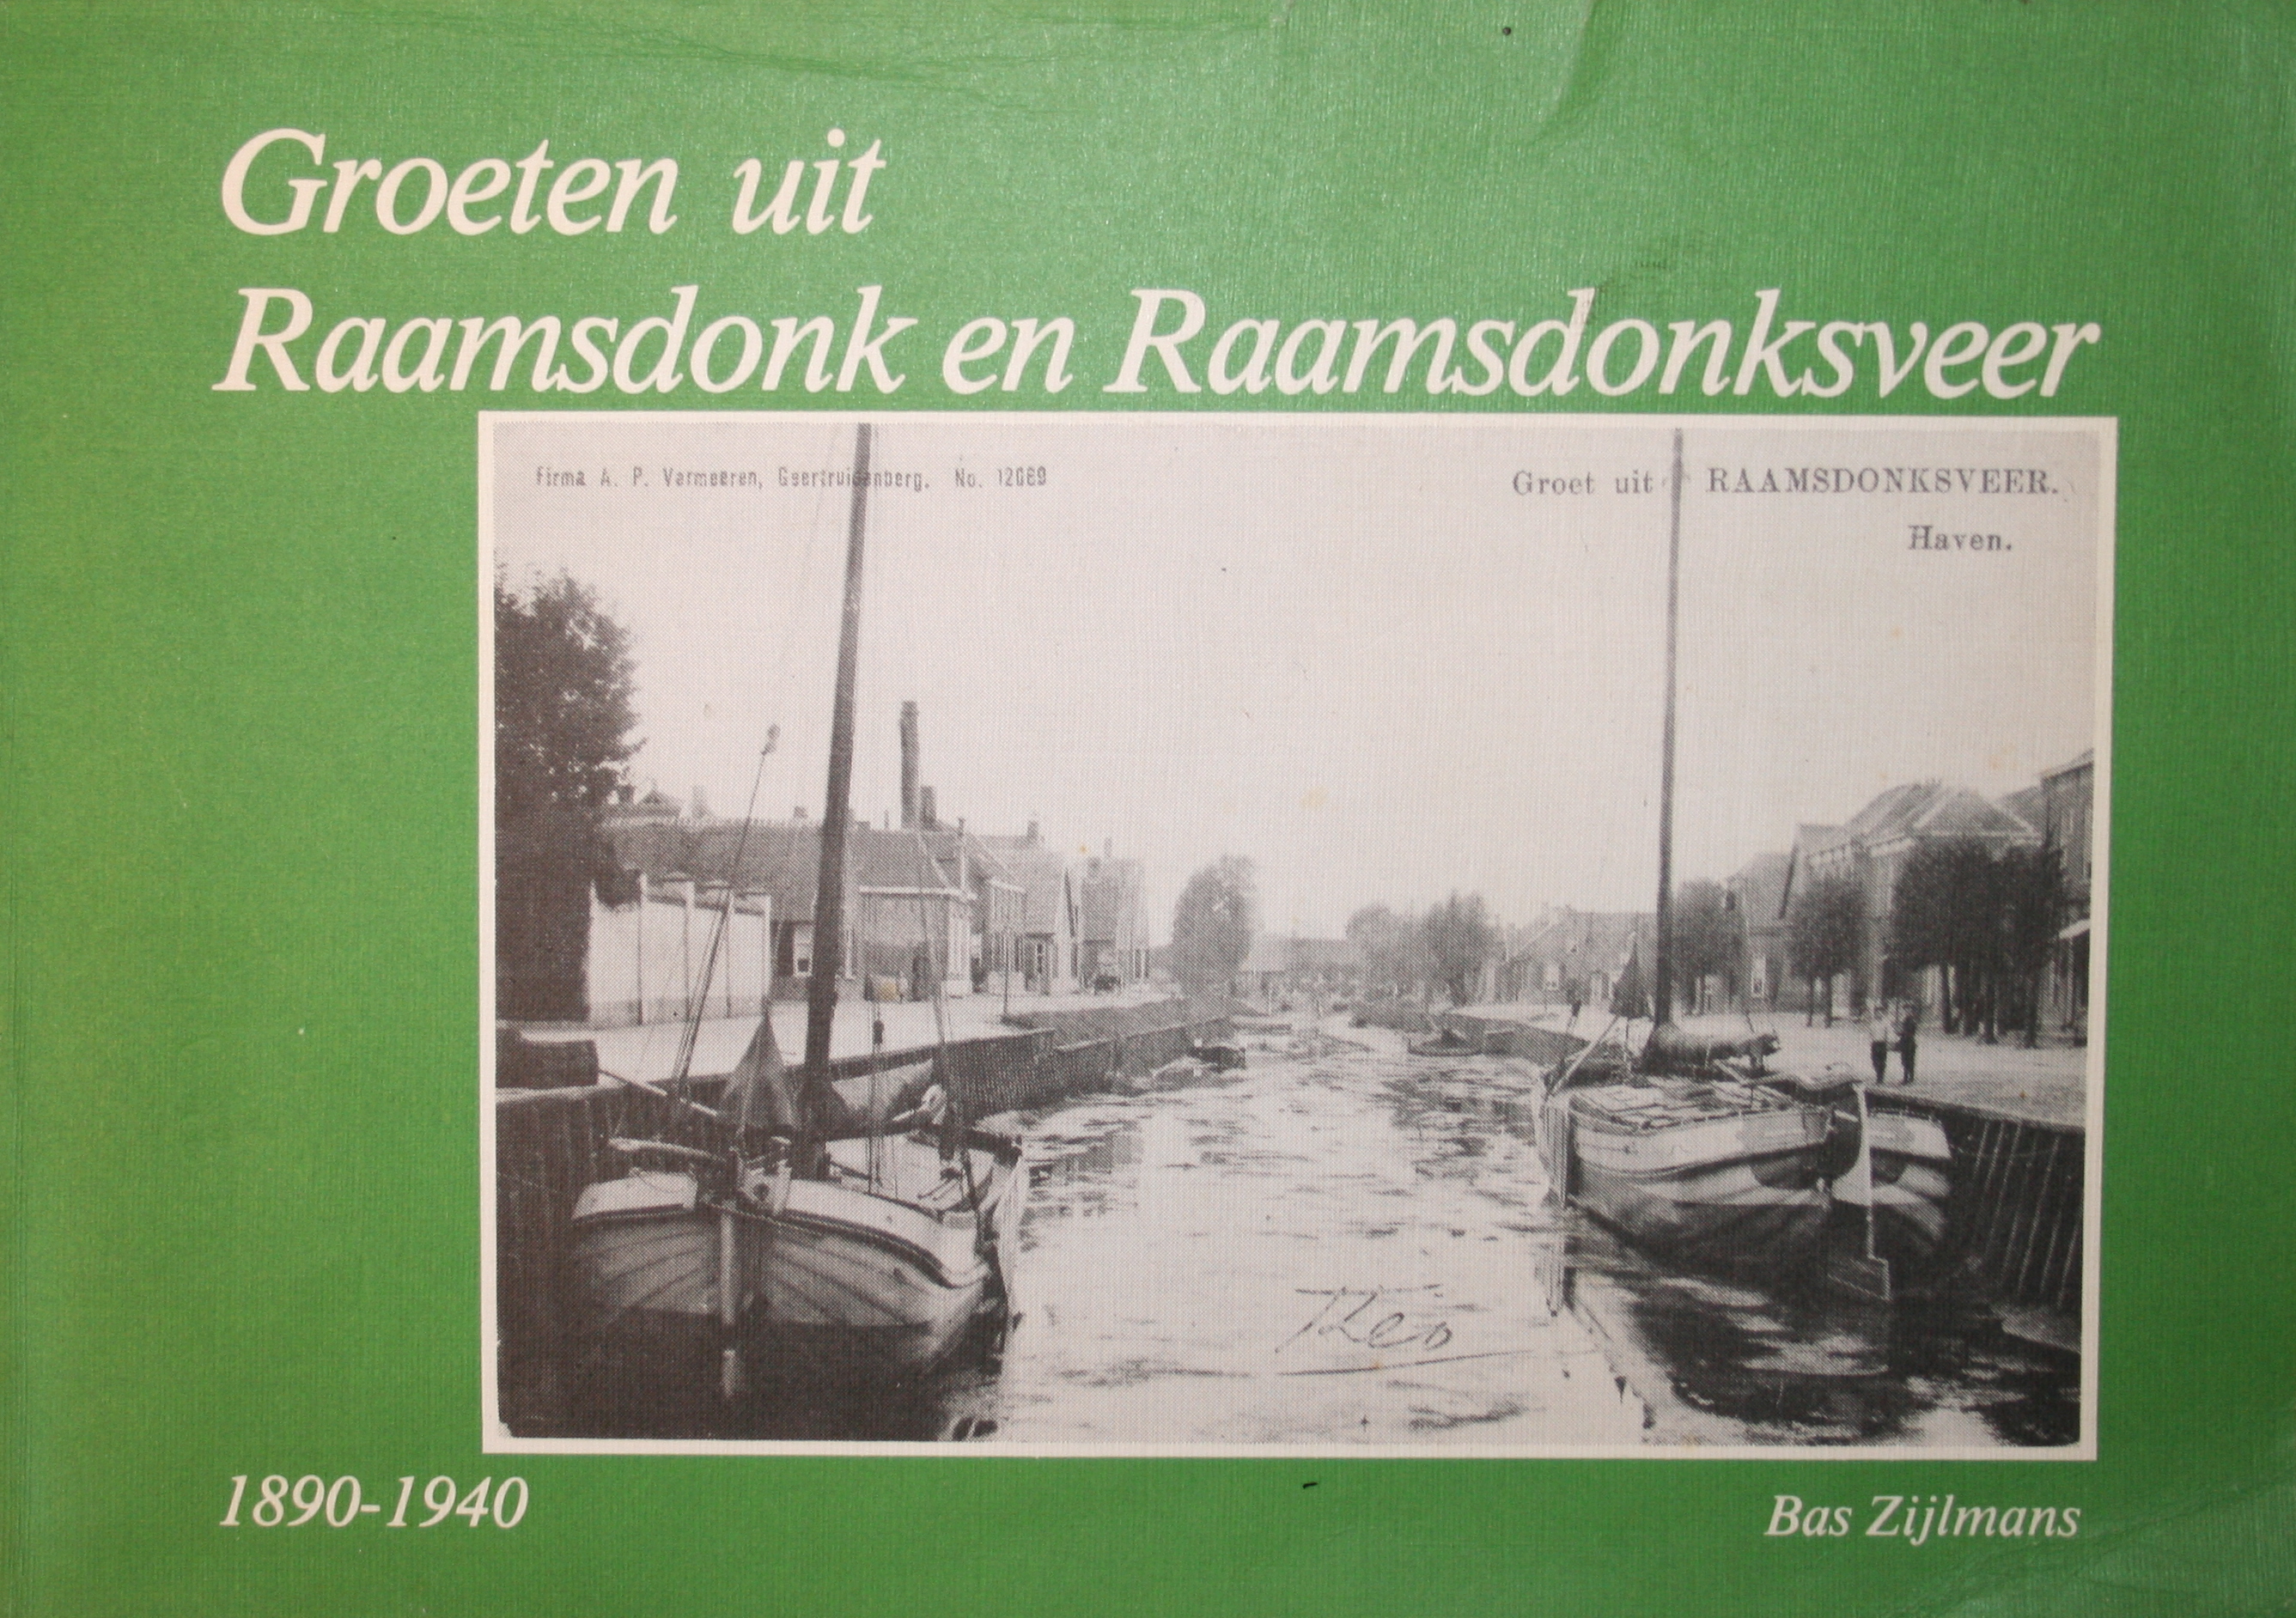 Cover of Groeten uit Raamsdonk en Raamsdonksveer